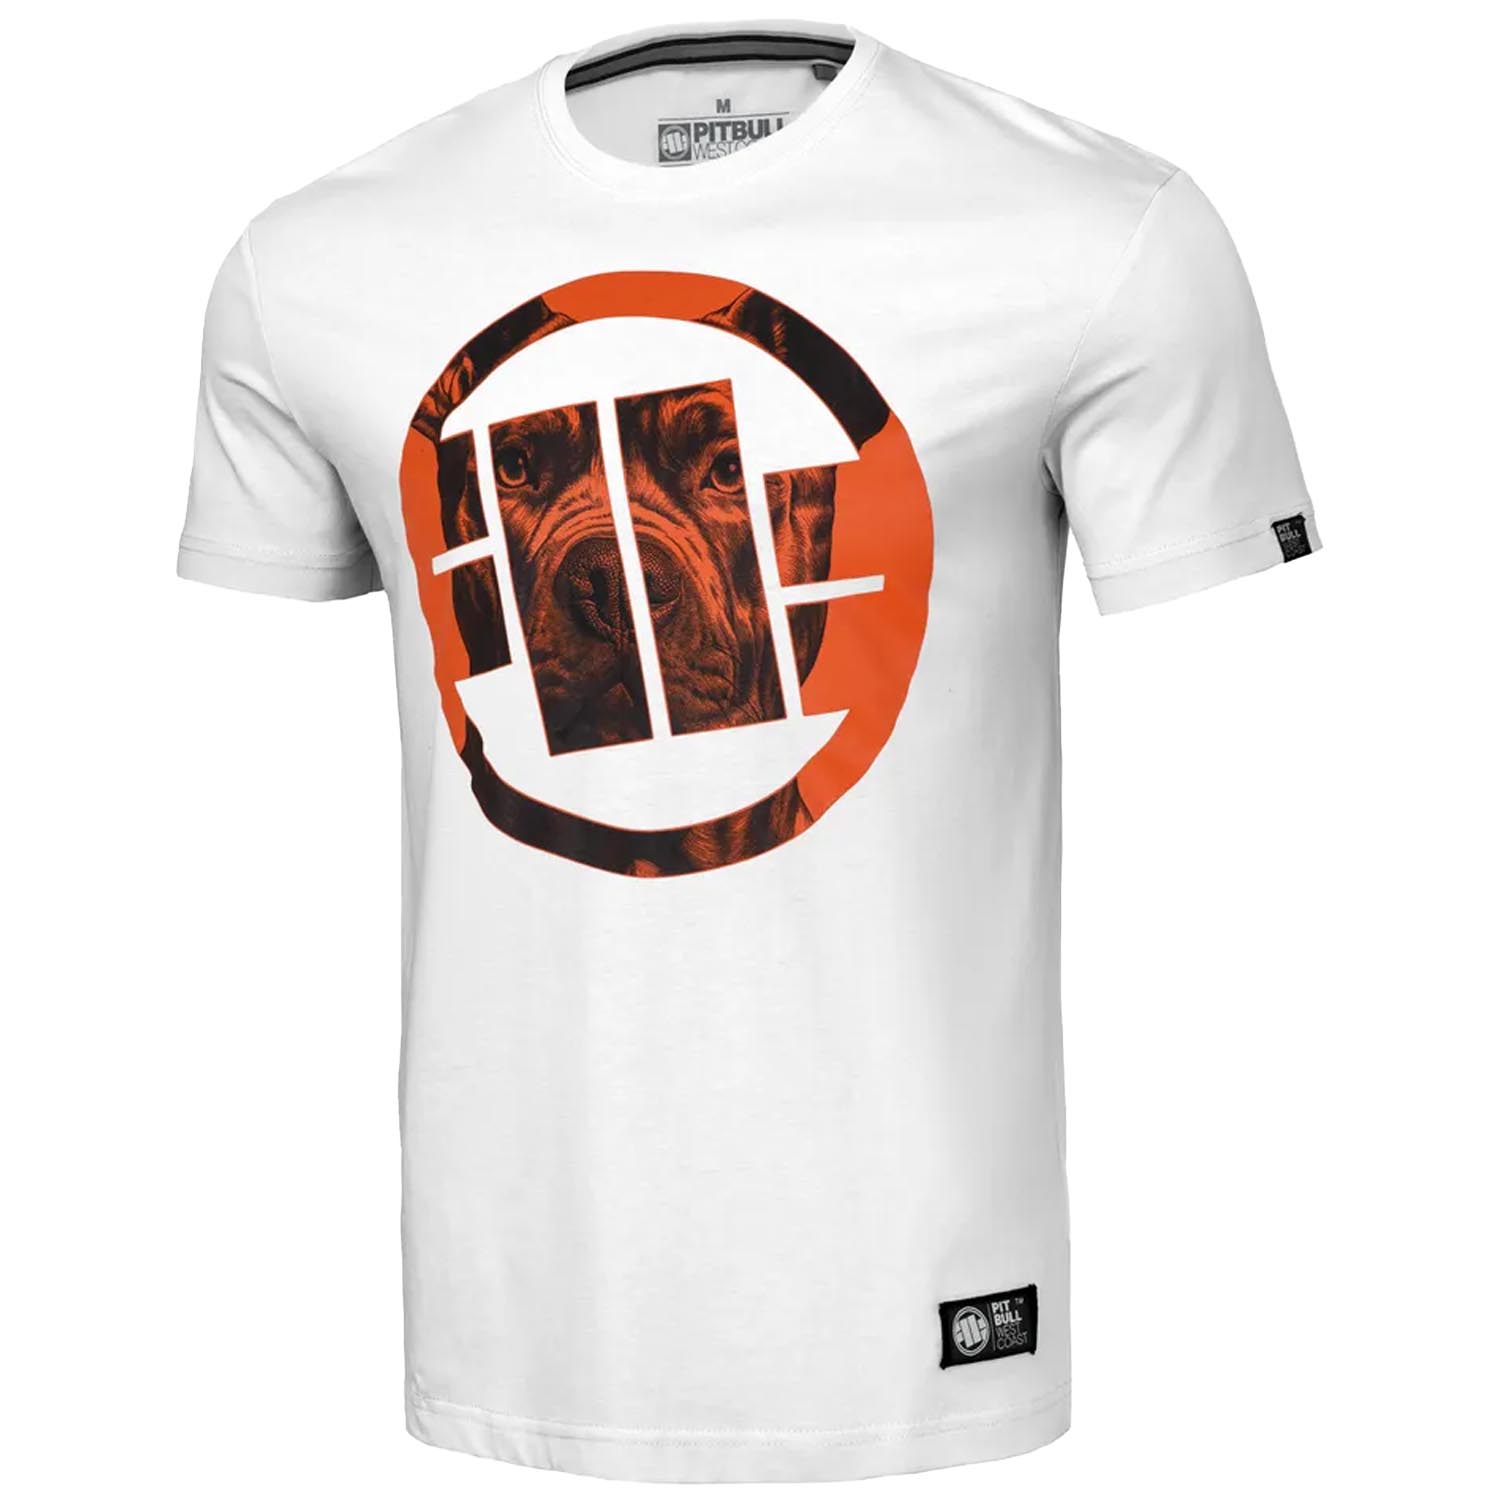 Pit Bull West Coast T-Shirt, Orange Dog 24, white-orange, L